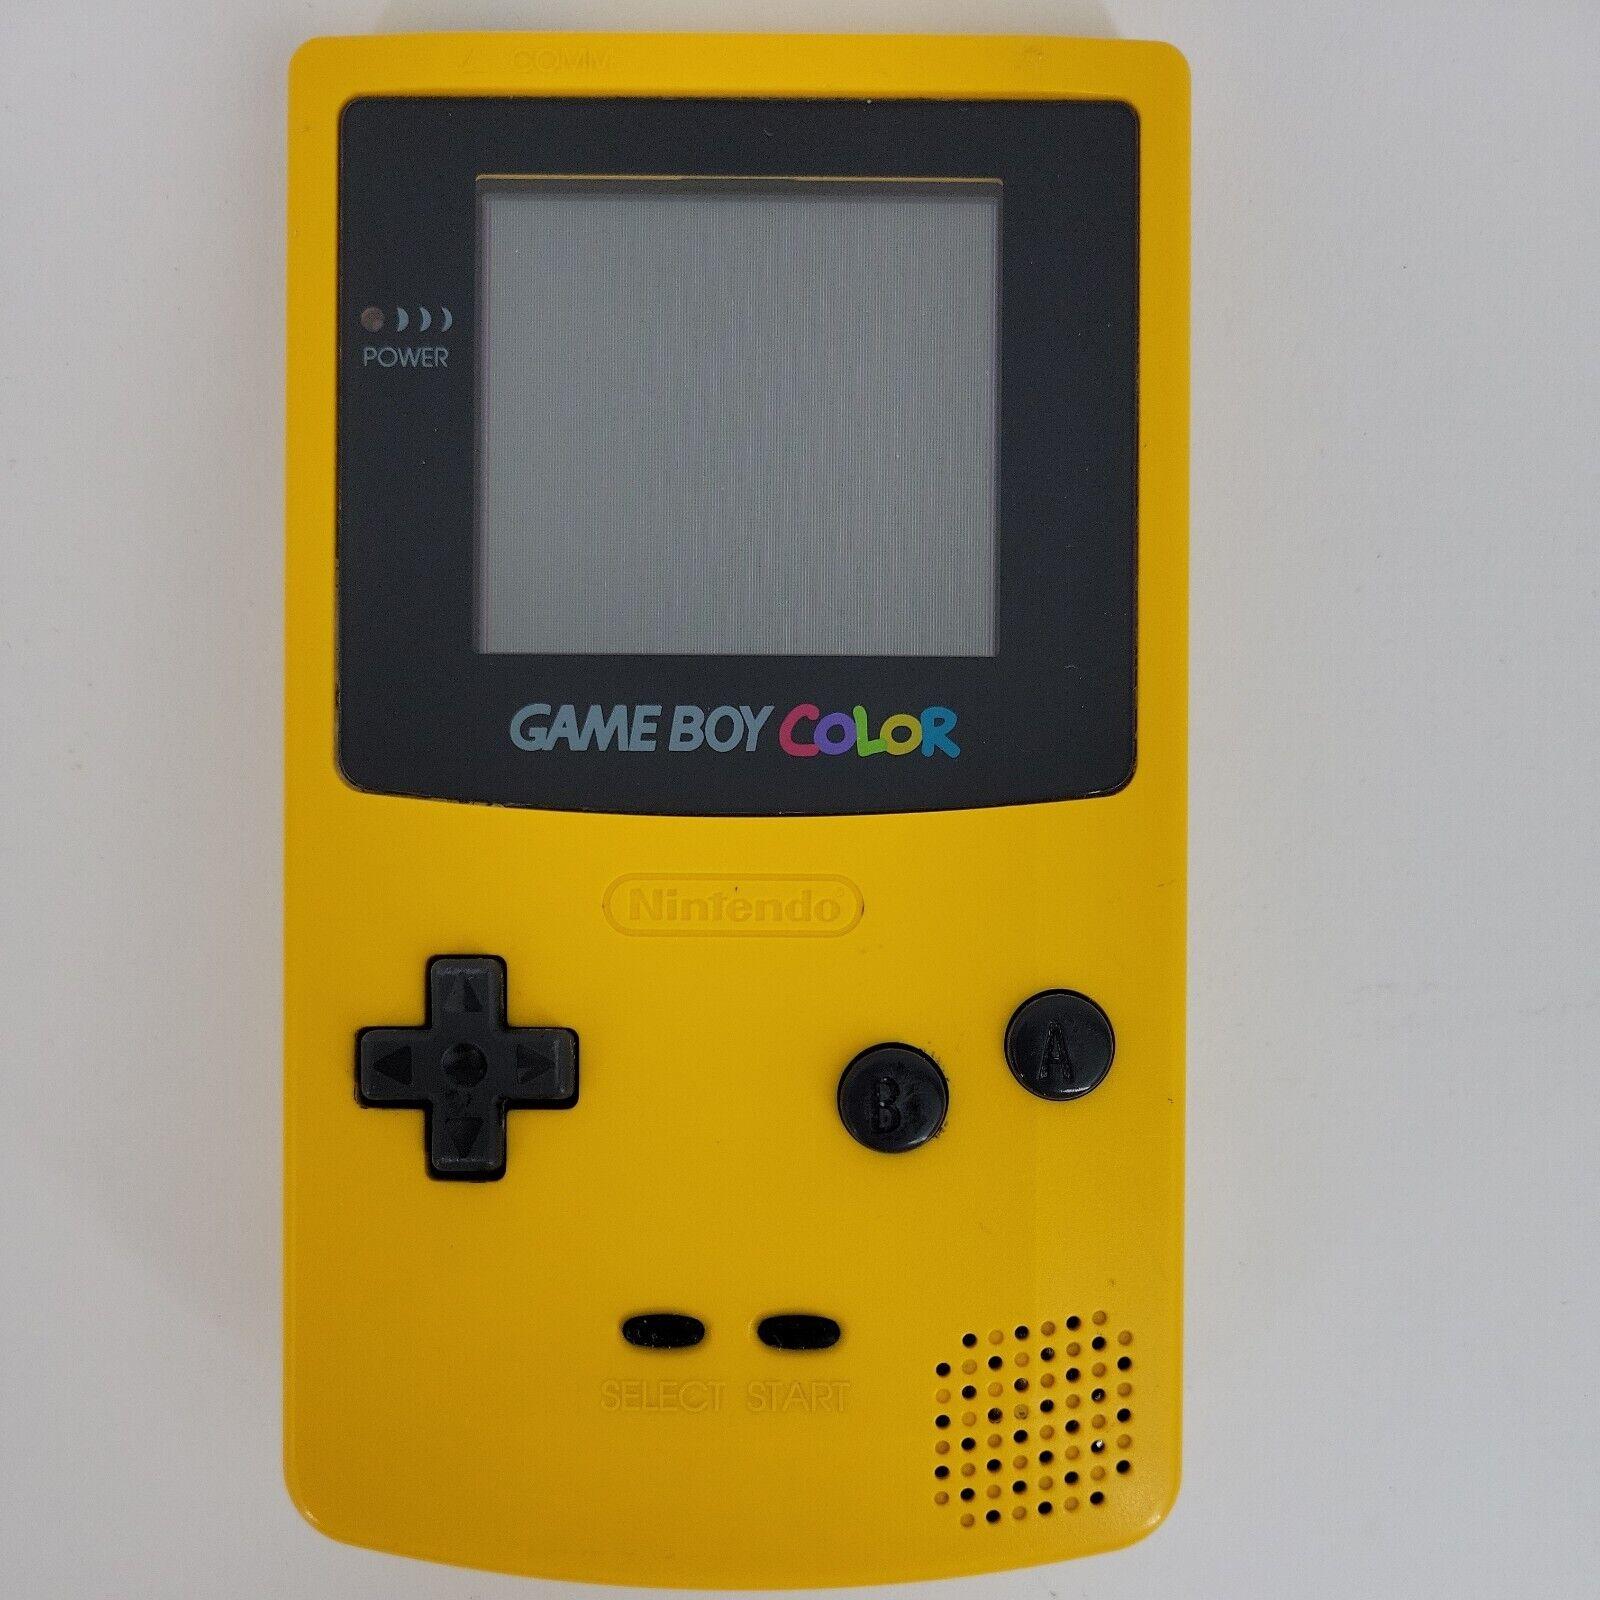 Game Boy Color System (Dandelion)